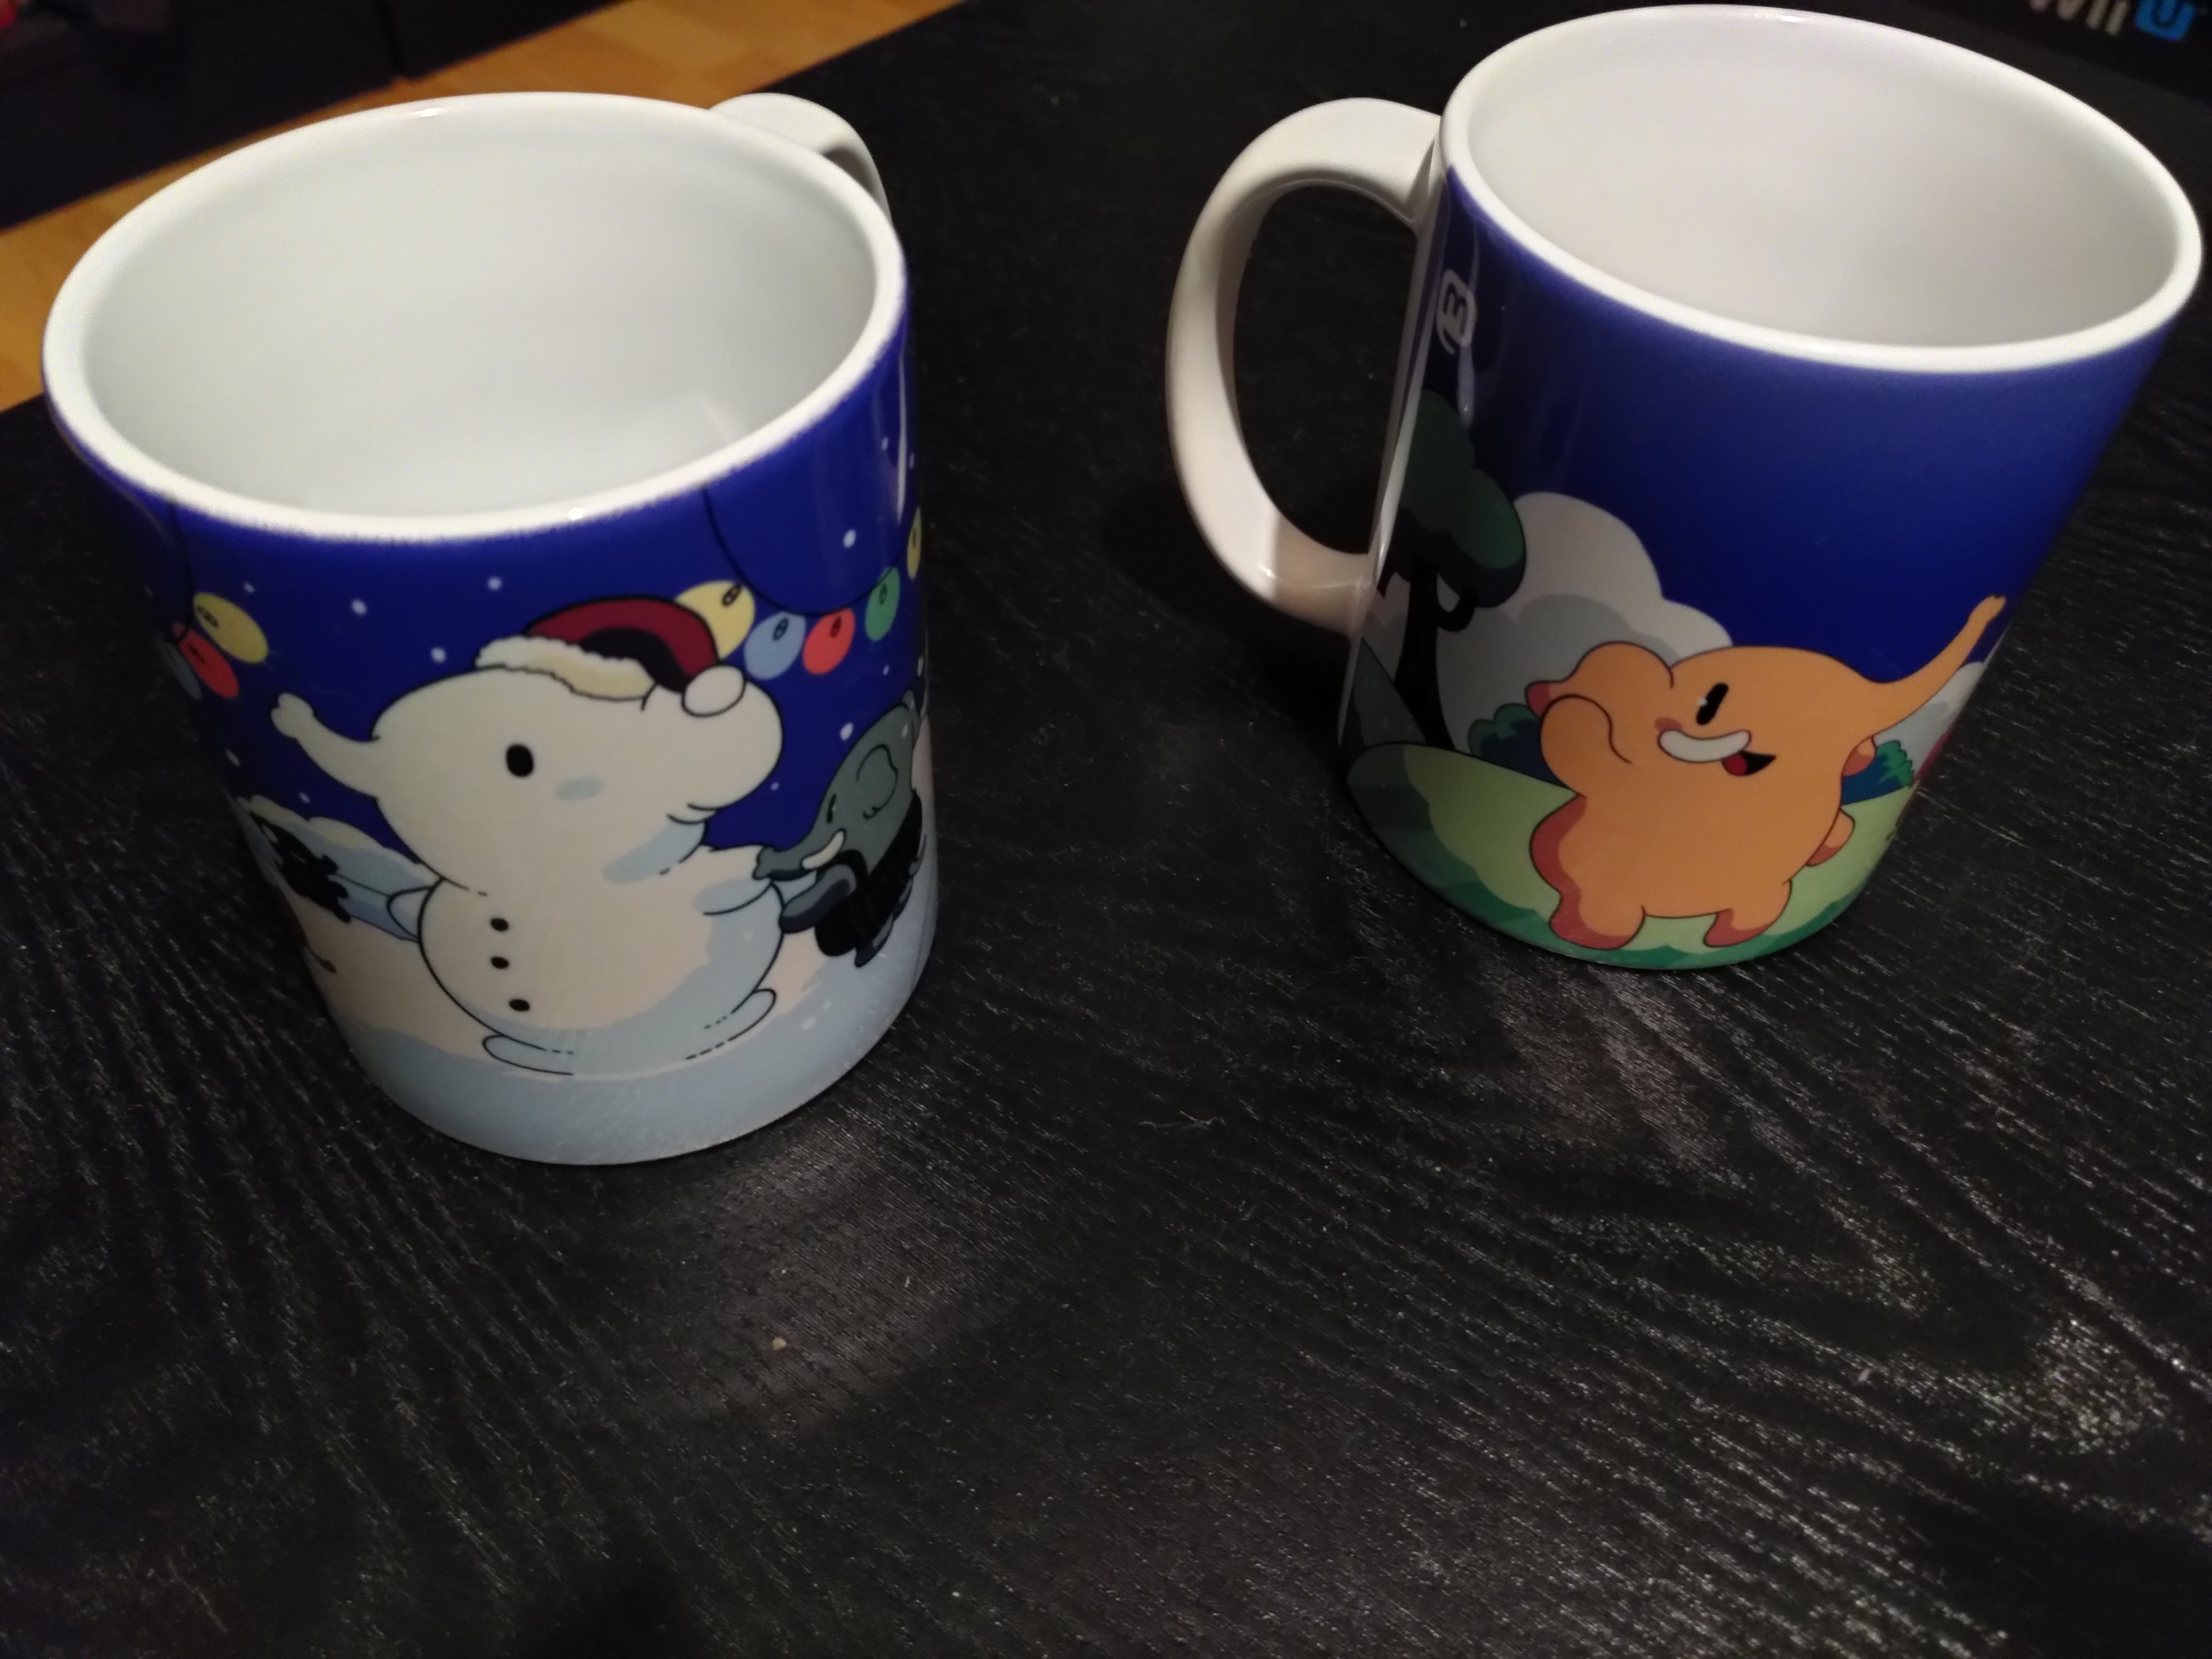 Les deux mugs Mastodon officiels, le classique avec des éléphants rigolos, et la version hiver avec des éléphants rigolos dont un en neige avec un bonnet de Père Noël.